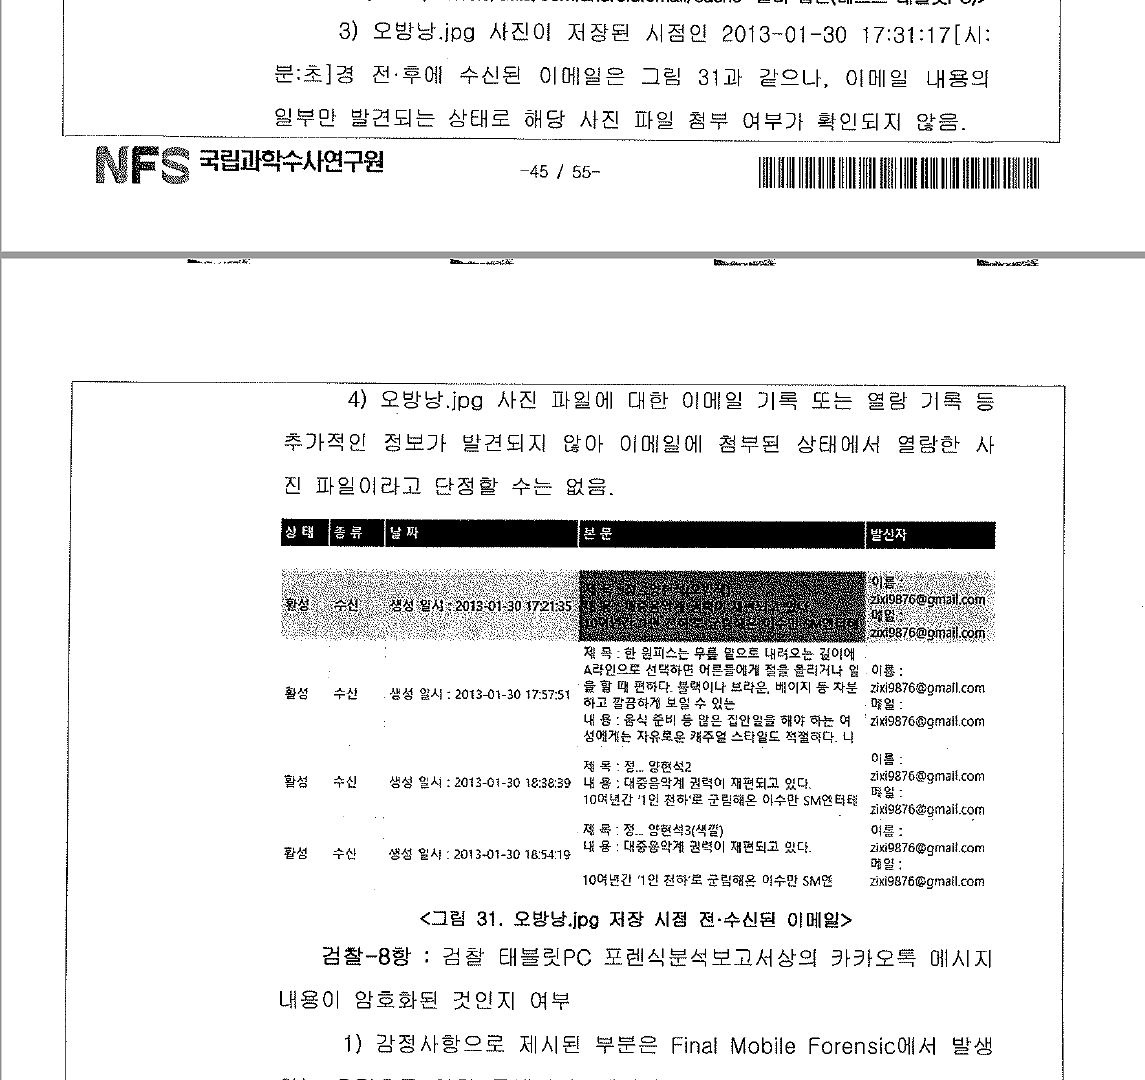 오방낭 사진은 JTBC 가 태블릿에 삽입한 것이라는 국과수 감정보고서